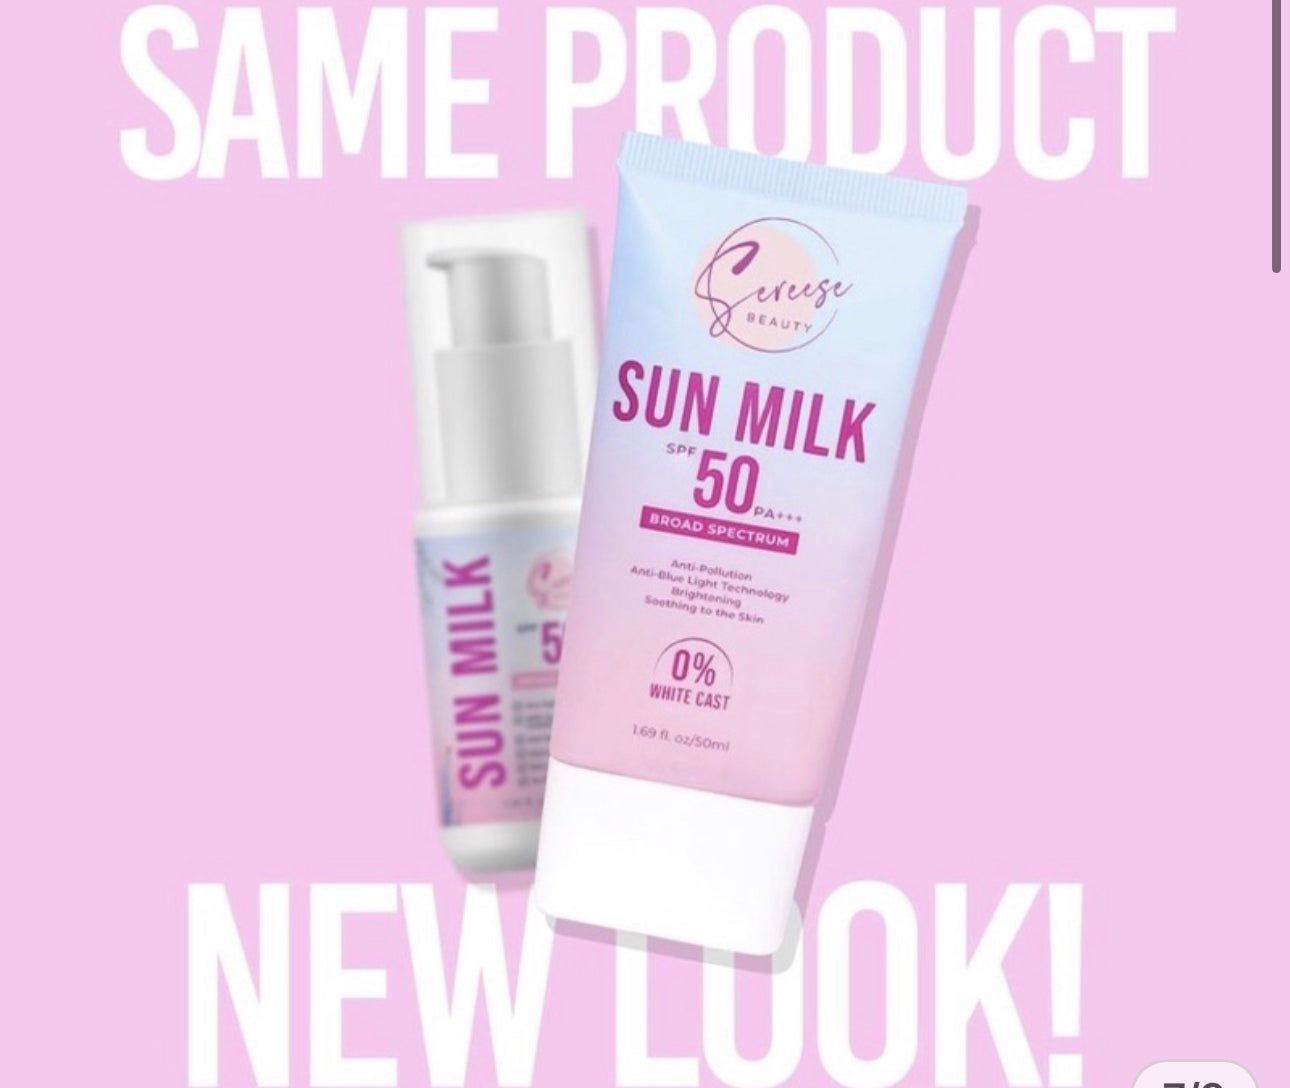 Sereese Beauty Sun Milk Version 2 SPF50